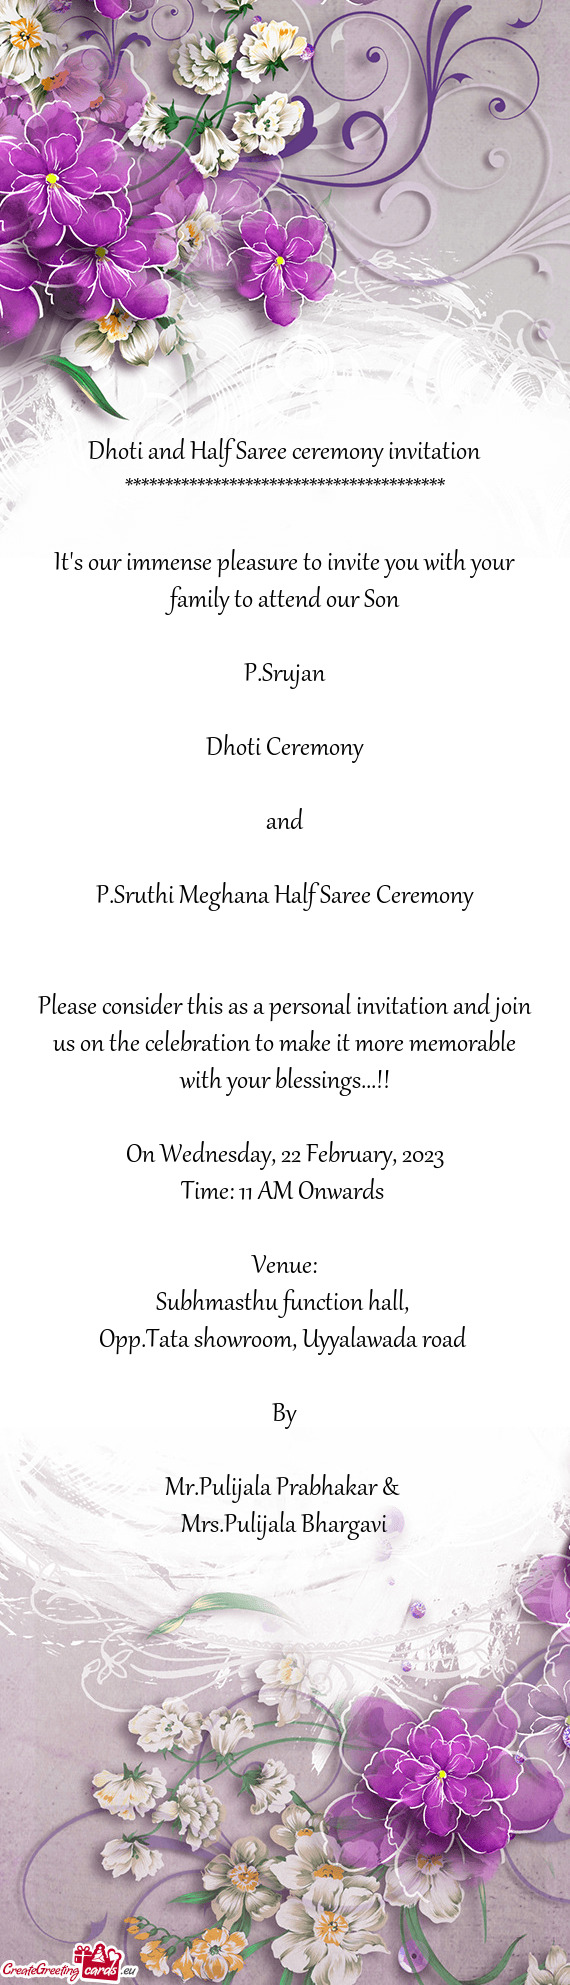 P.Sruthi Meghana Half Saree Ceremony